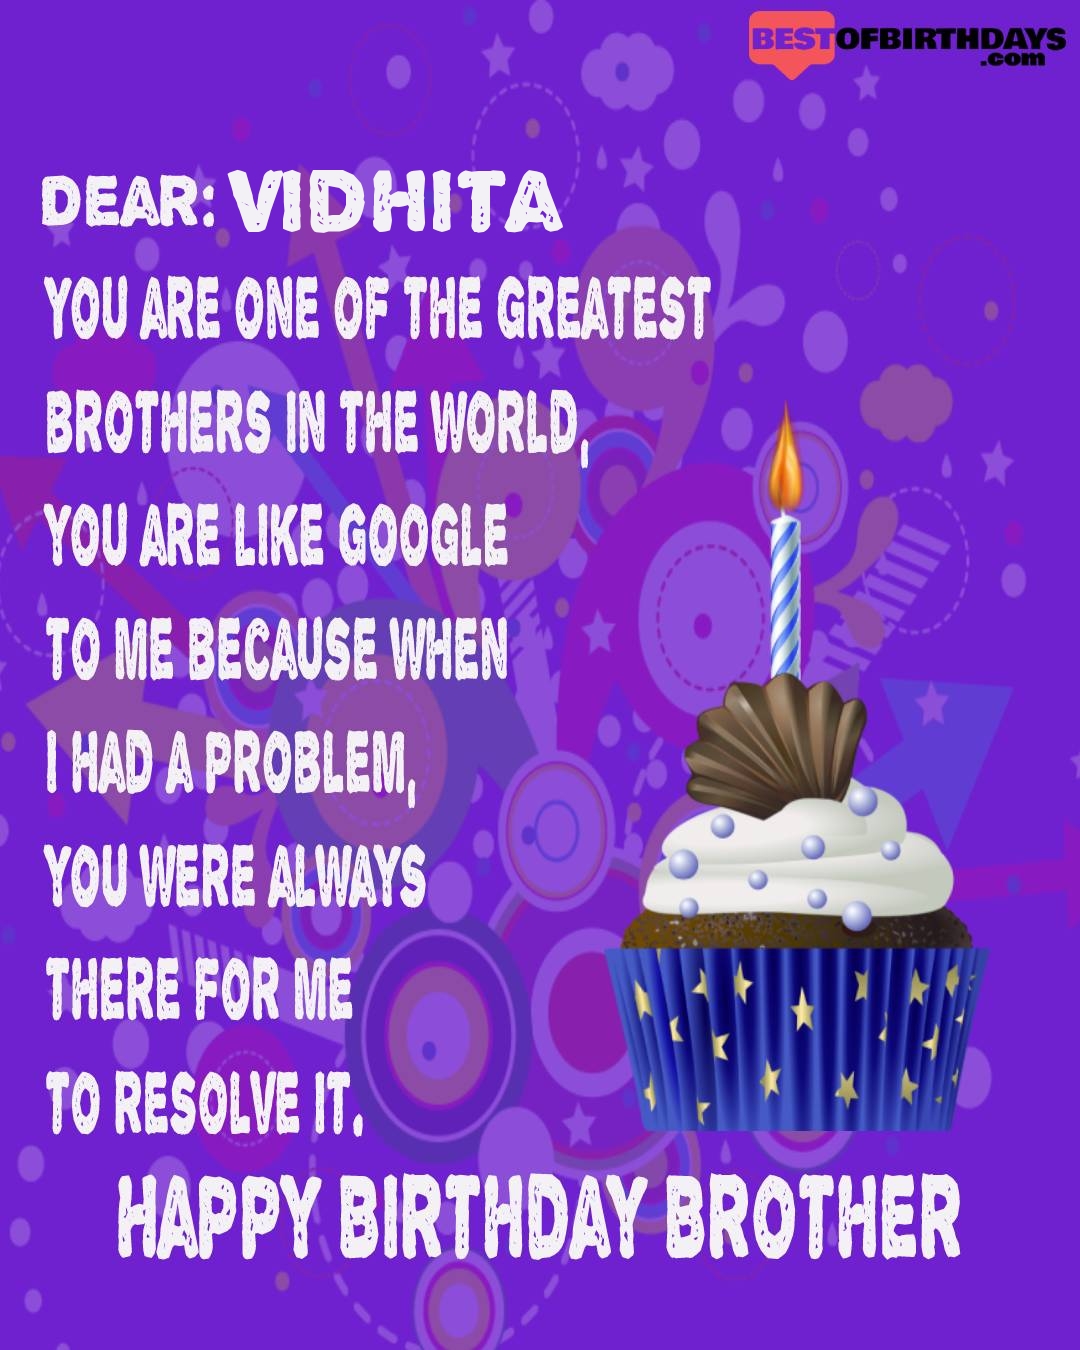 Happy birthday vidhita bhai brother bro